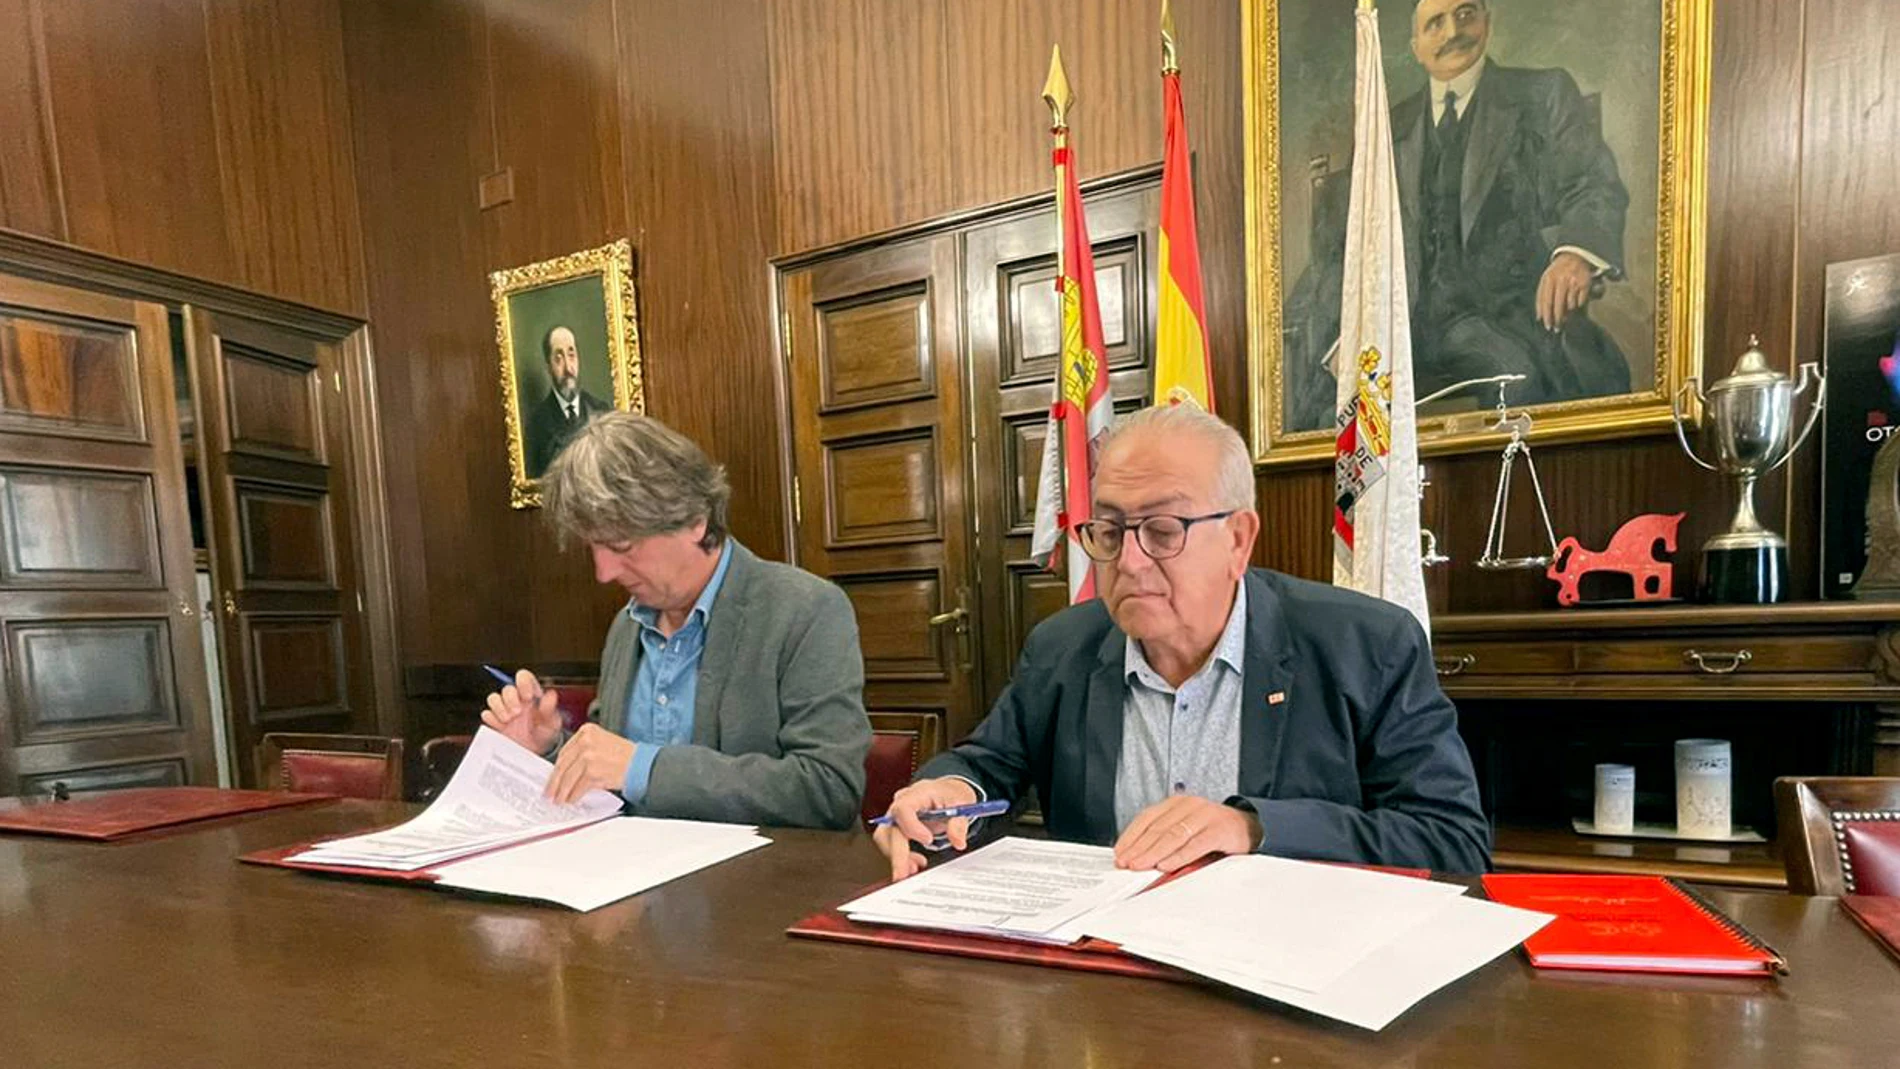 El alcalde de Soria, Carlos Martínez, y el presidente de Cruz Roja Soria, Modesto Fernández, firman un convenio de colaboración entre ambas entidades